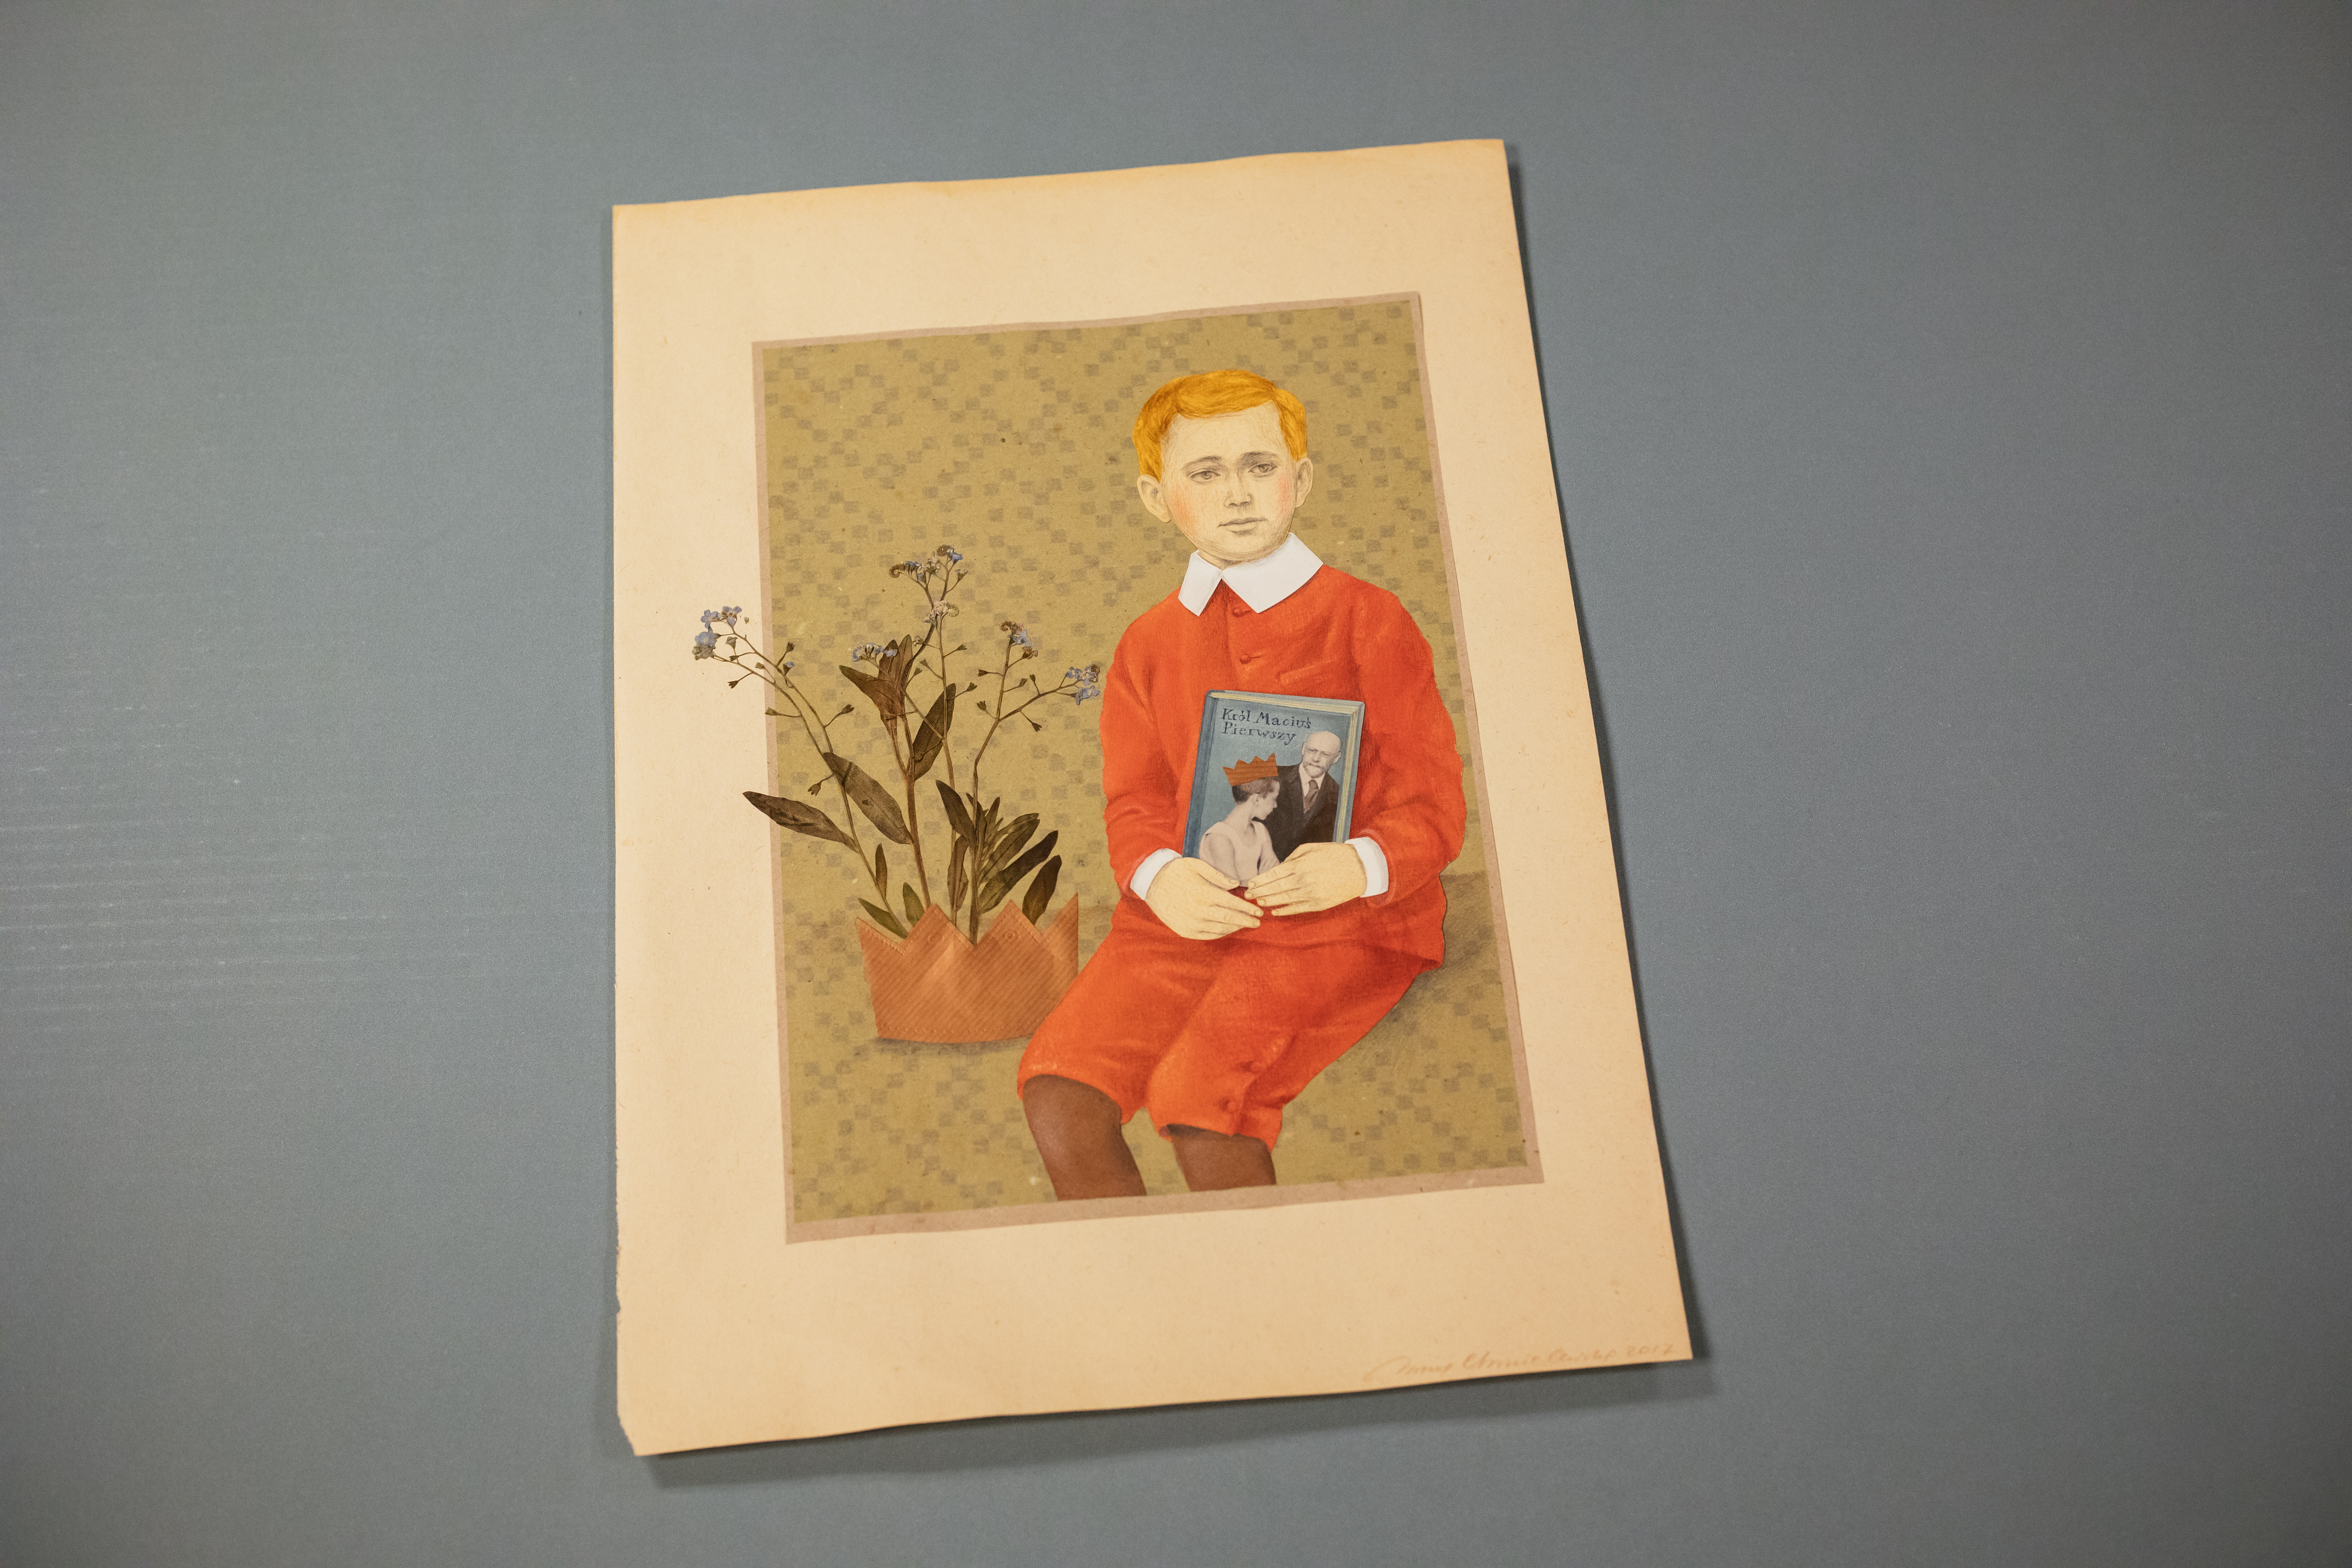 Obraz przedstawiający króla Maciusia -rudego chłopca w czerwonej marynarce i czerwonych spodniach do połowy nóg, trzymającego przy pasie, okładką do widza, książkę. Na lewo od chłopca - niebieskie kwiatki, wystające z brązowej schematycznej korony.